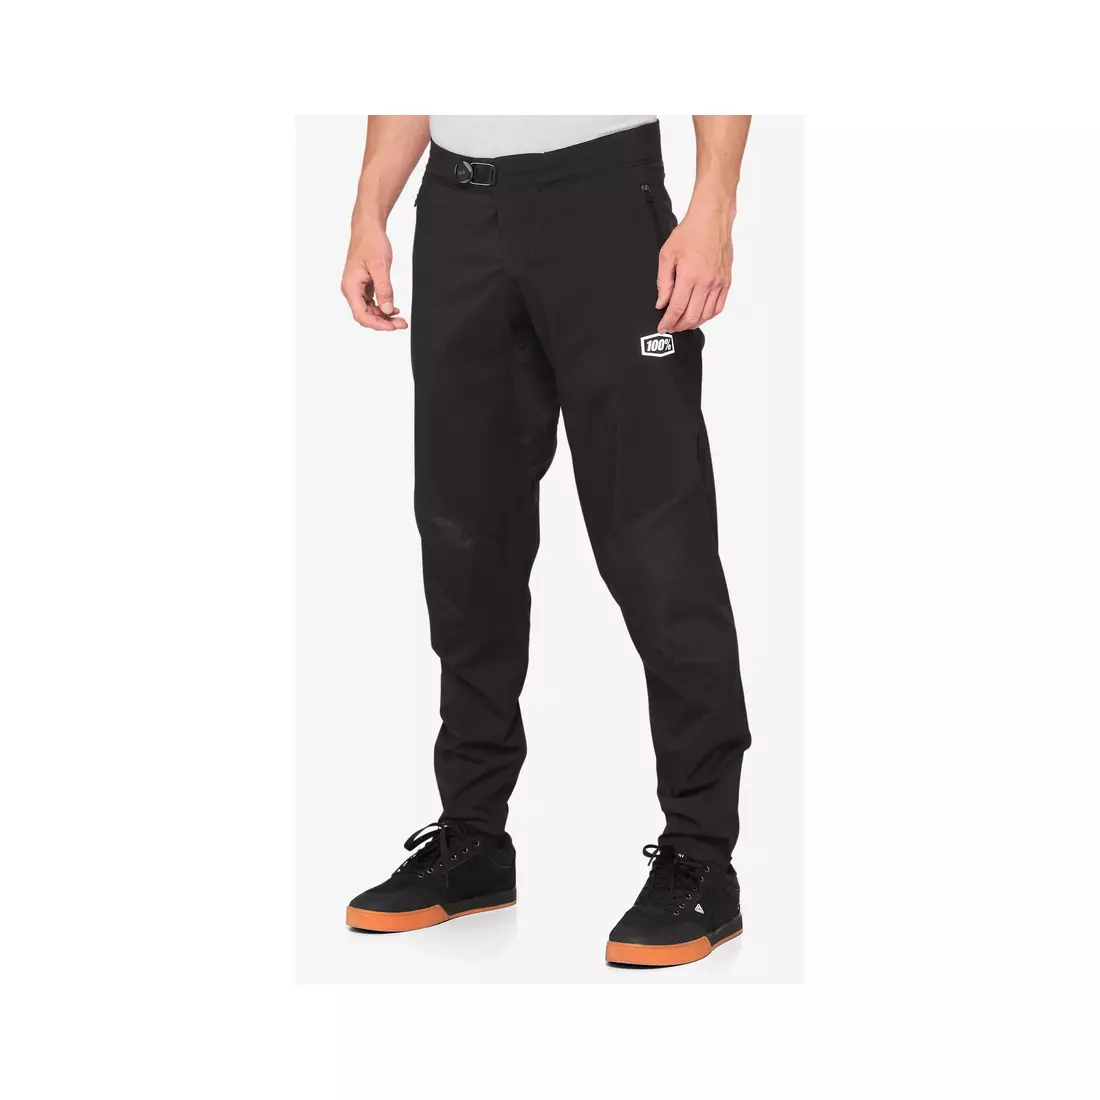 100% spodnie rowerowe męskie HYDROMATIC black STO-43500-001-28